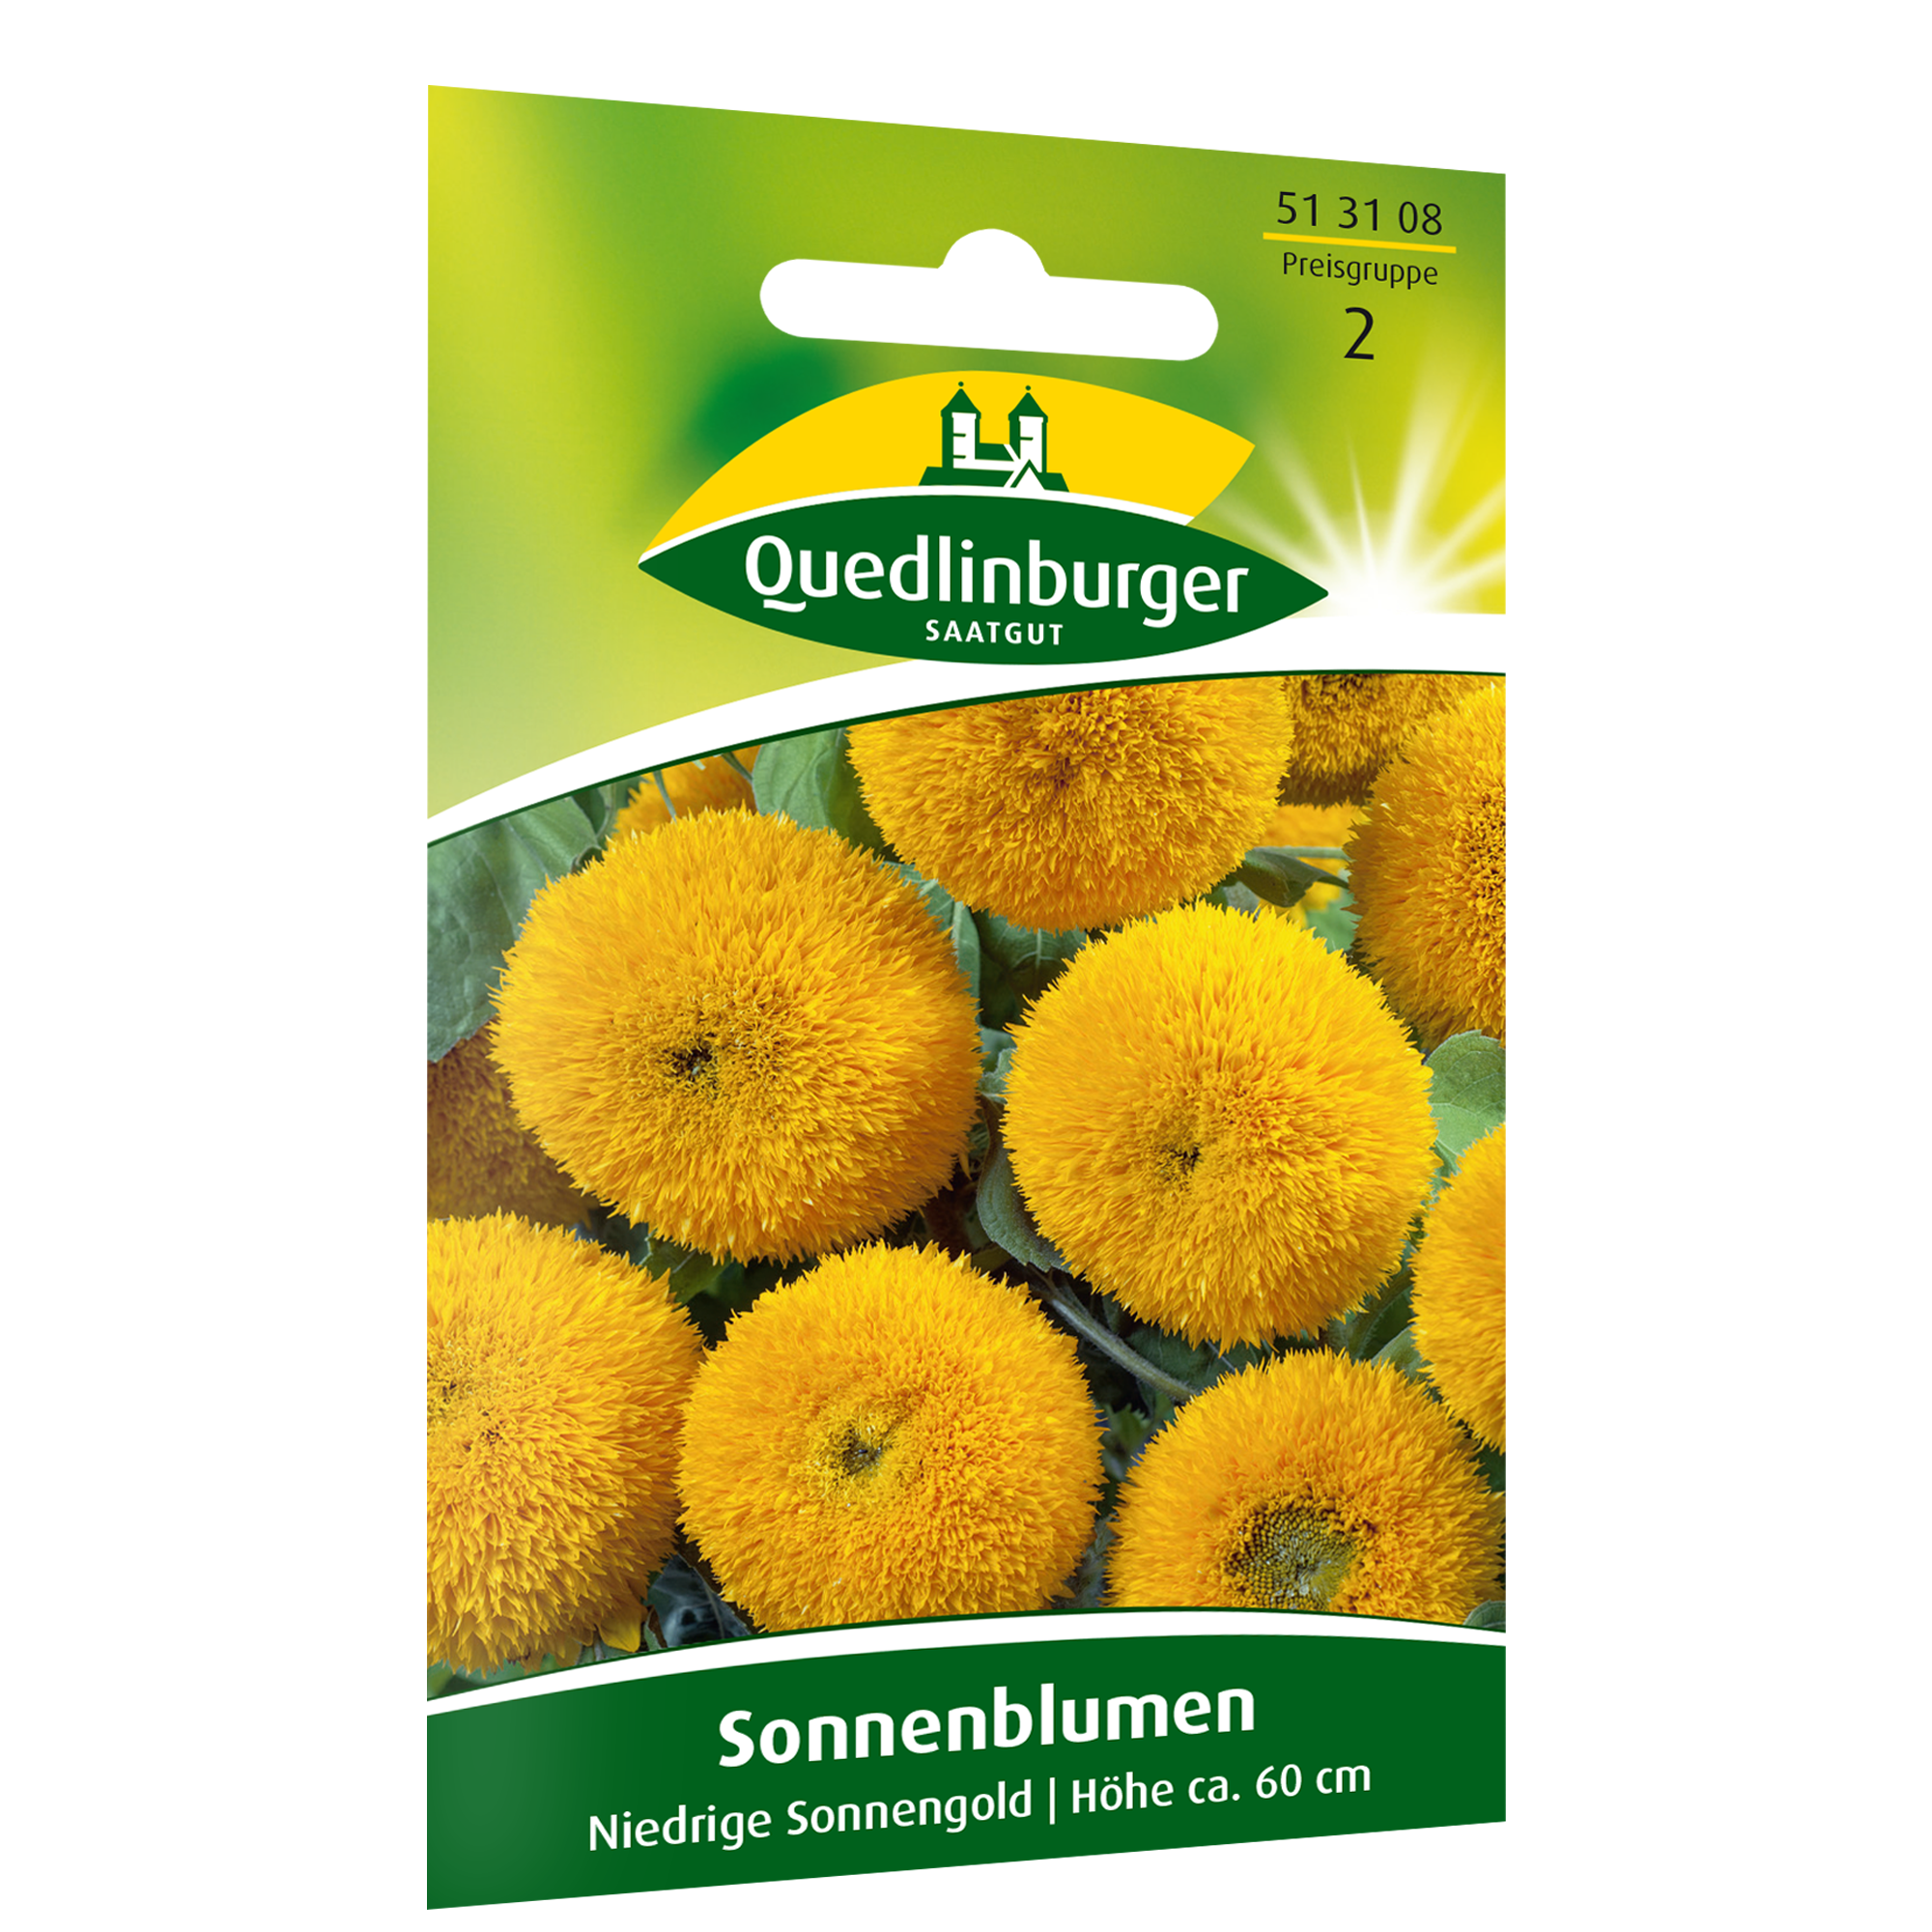 Sonnenblumen 'Niedrige Sonnengold' + product picture